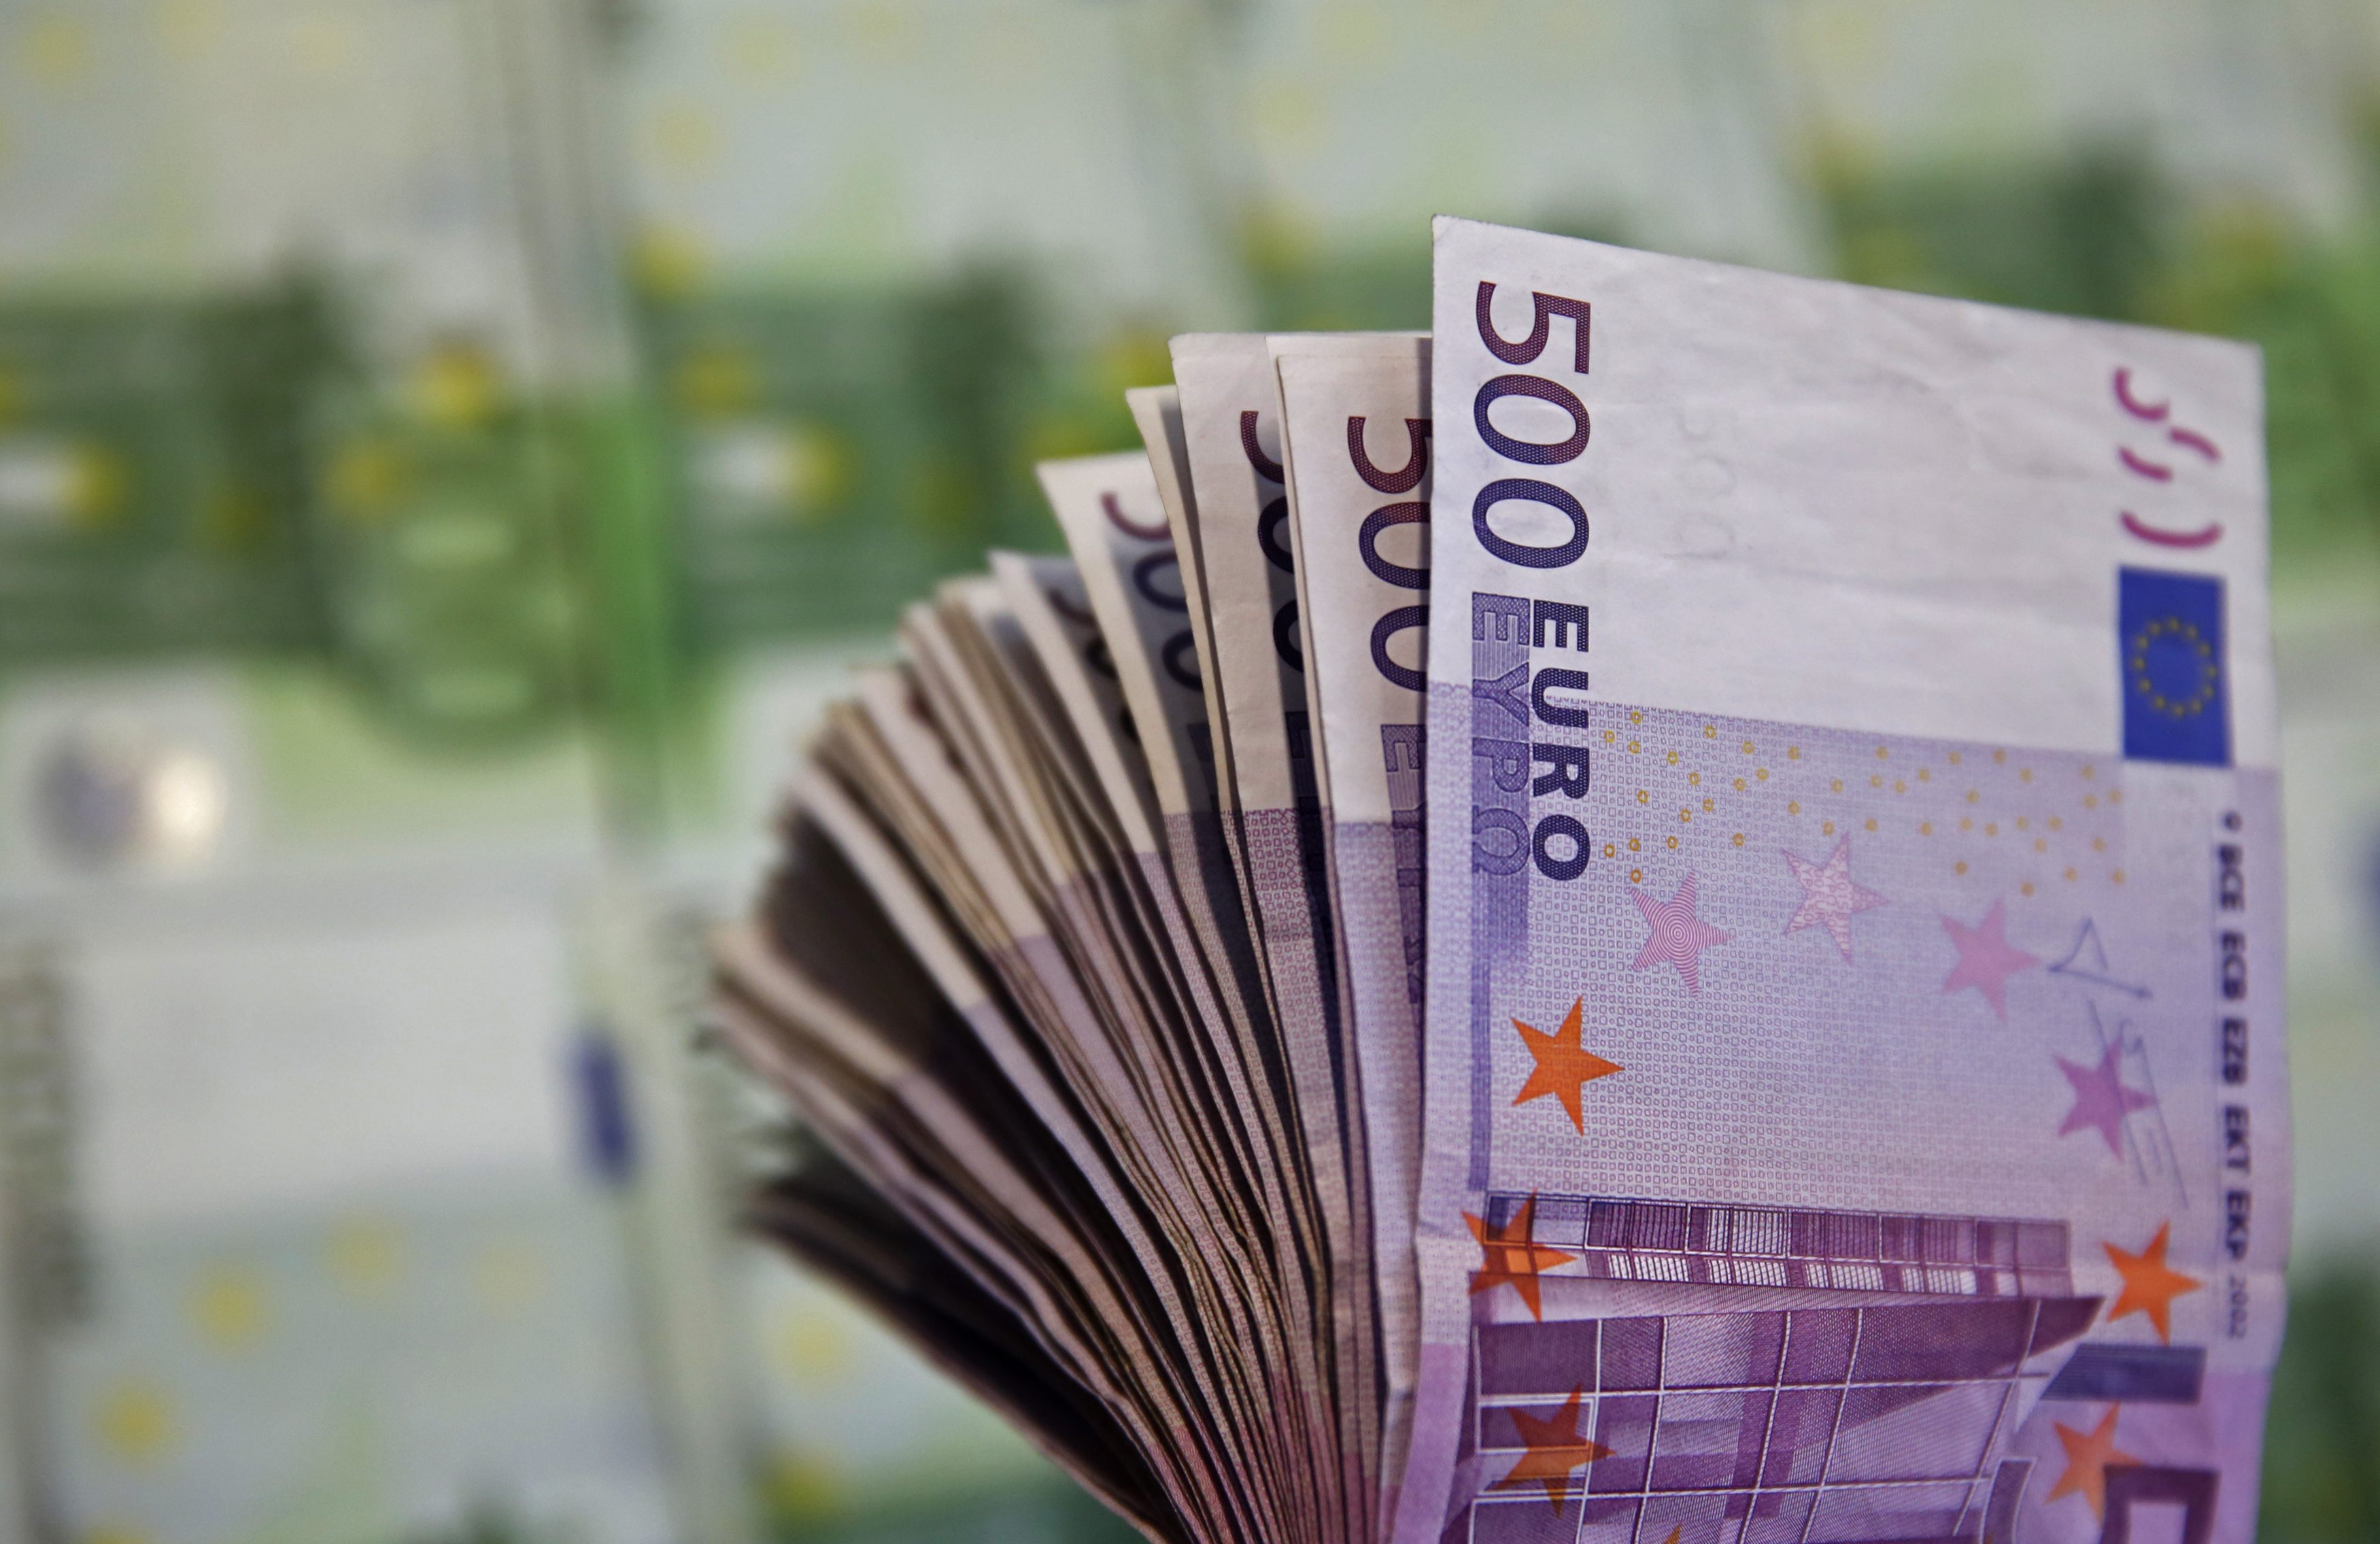 Αύξηση κερδών 19% στα €5,7 εκατ. για την Ευρωπαϊκή Πίστη στο 6μηνο